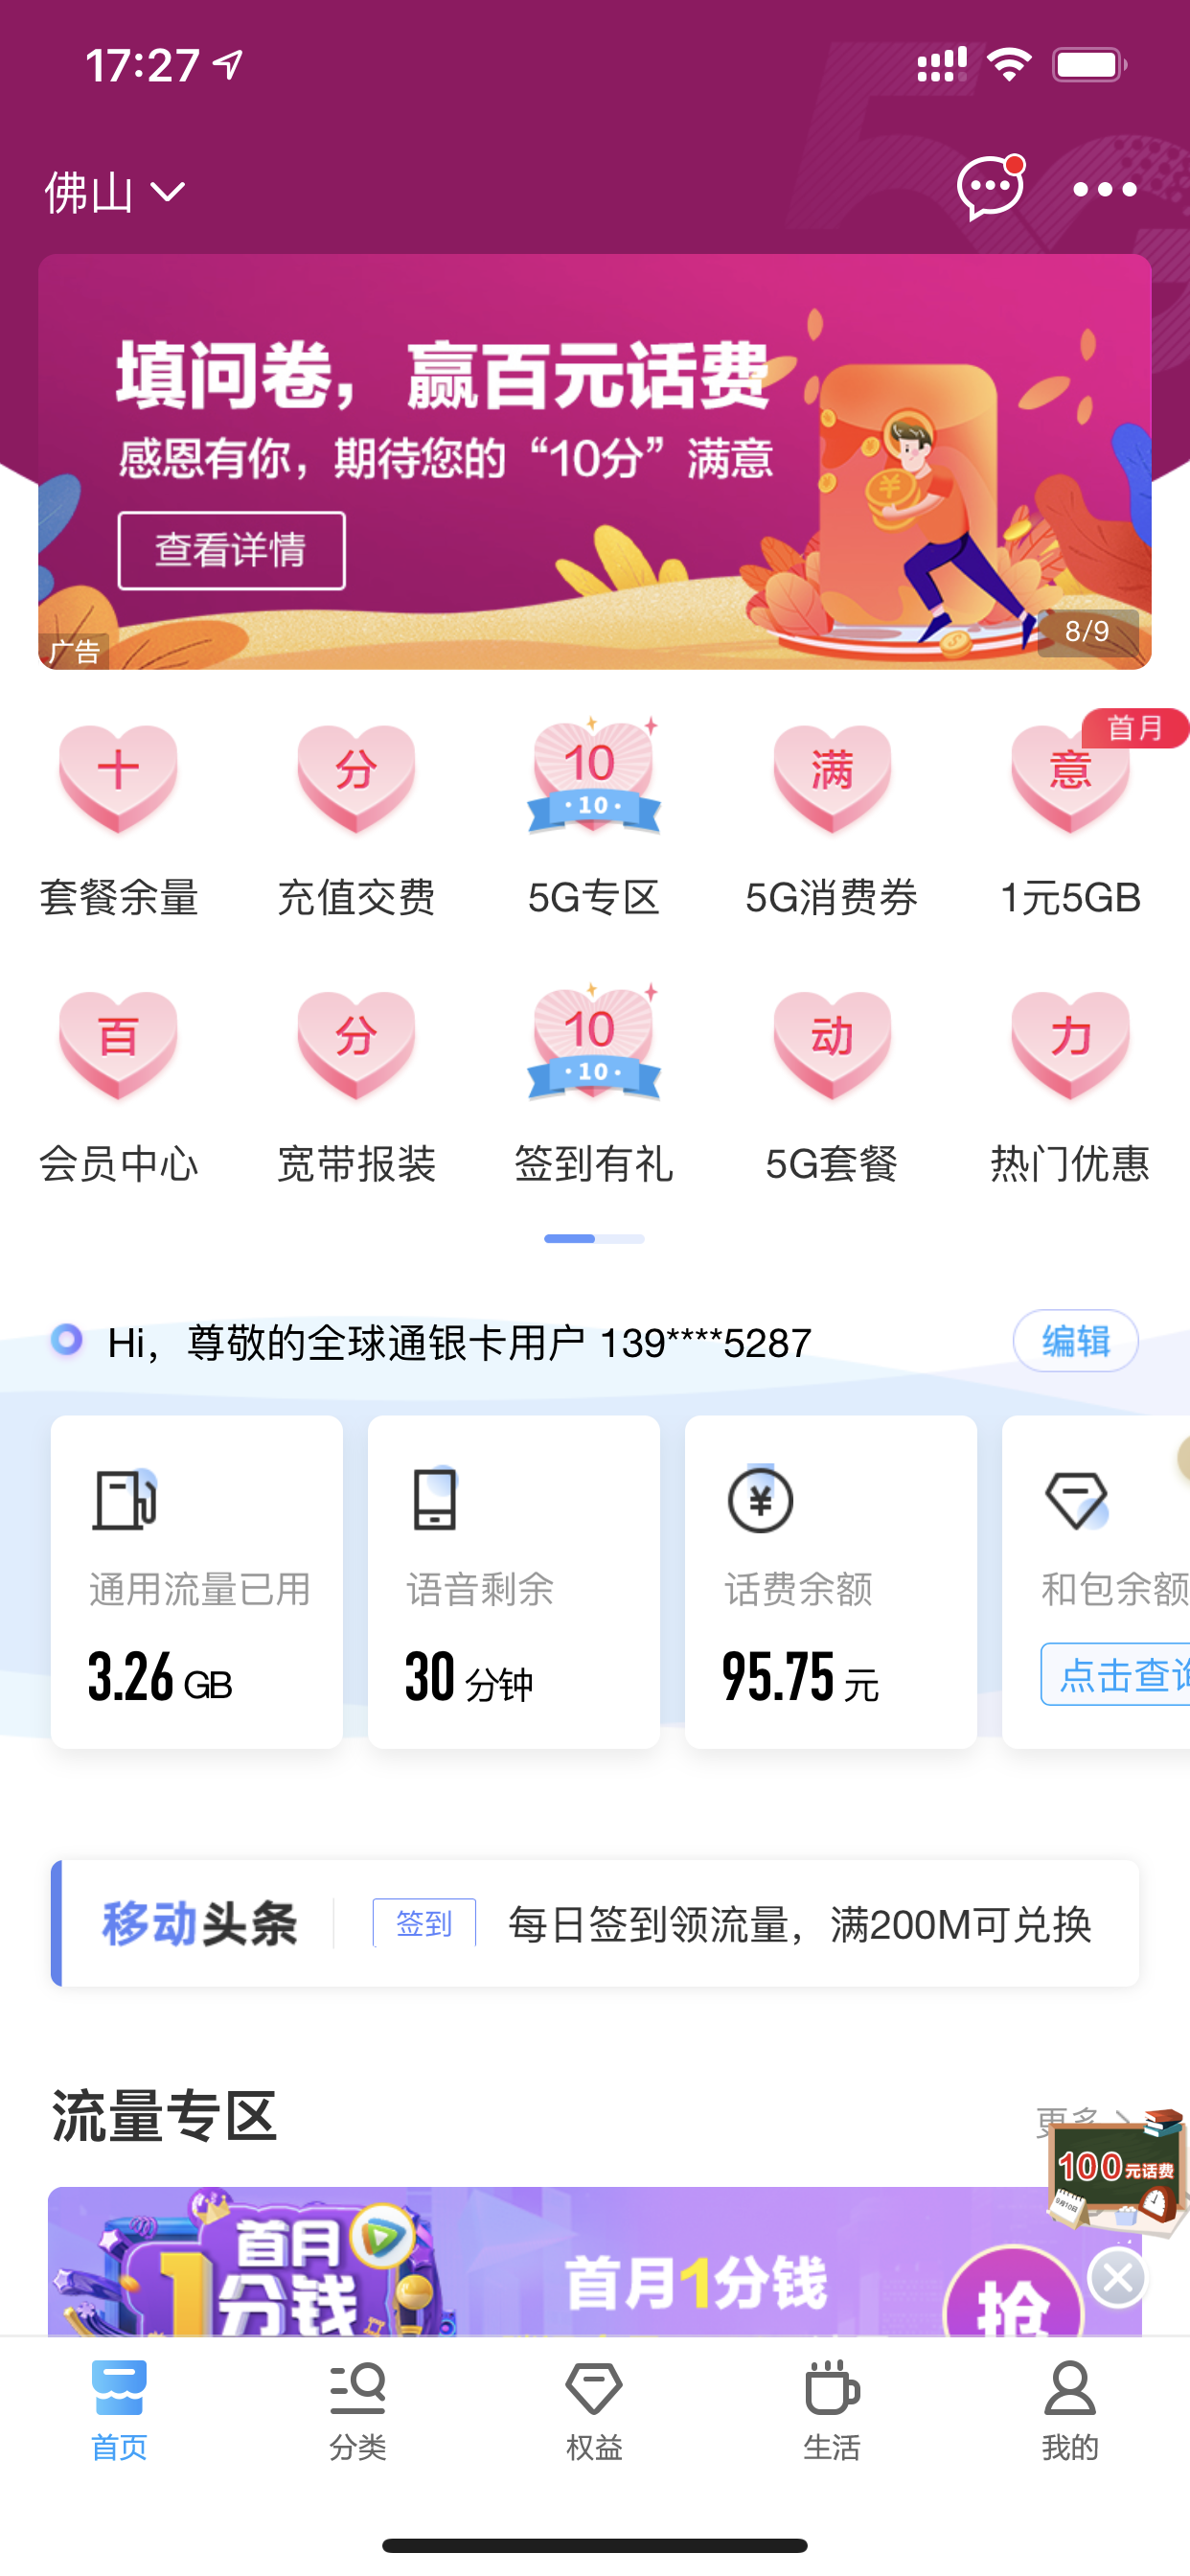 中国移动app，填问卷，送钱